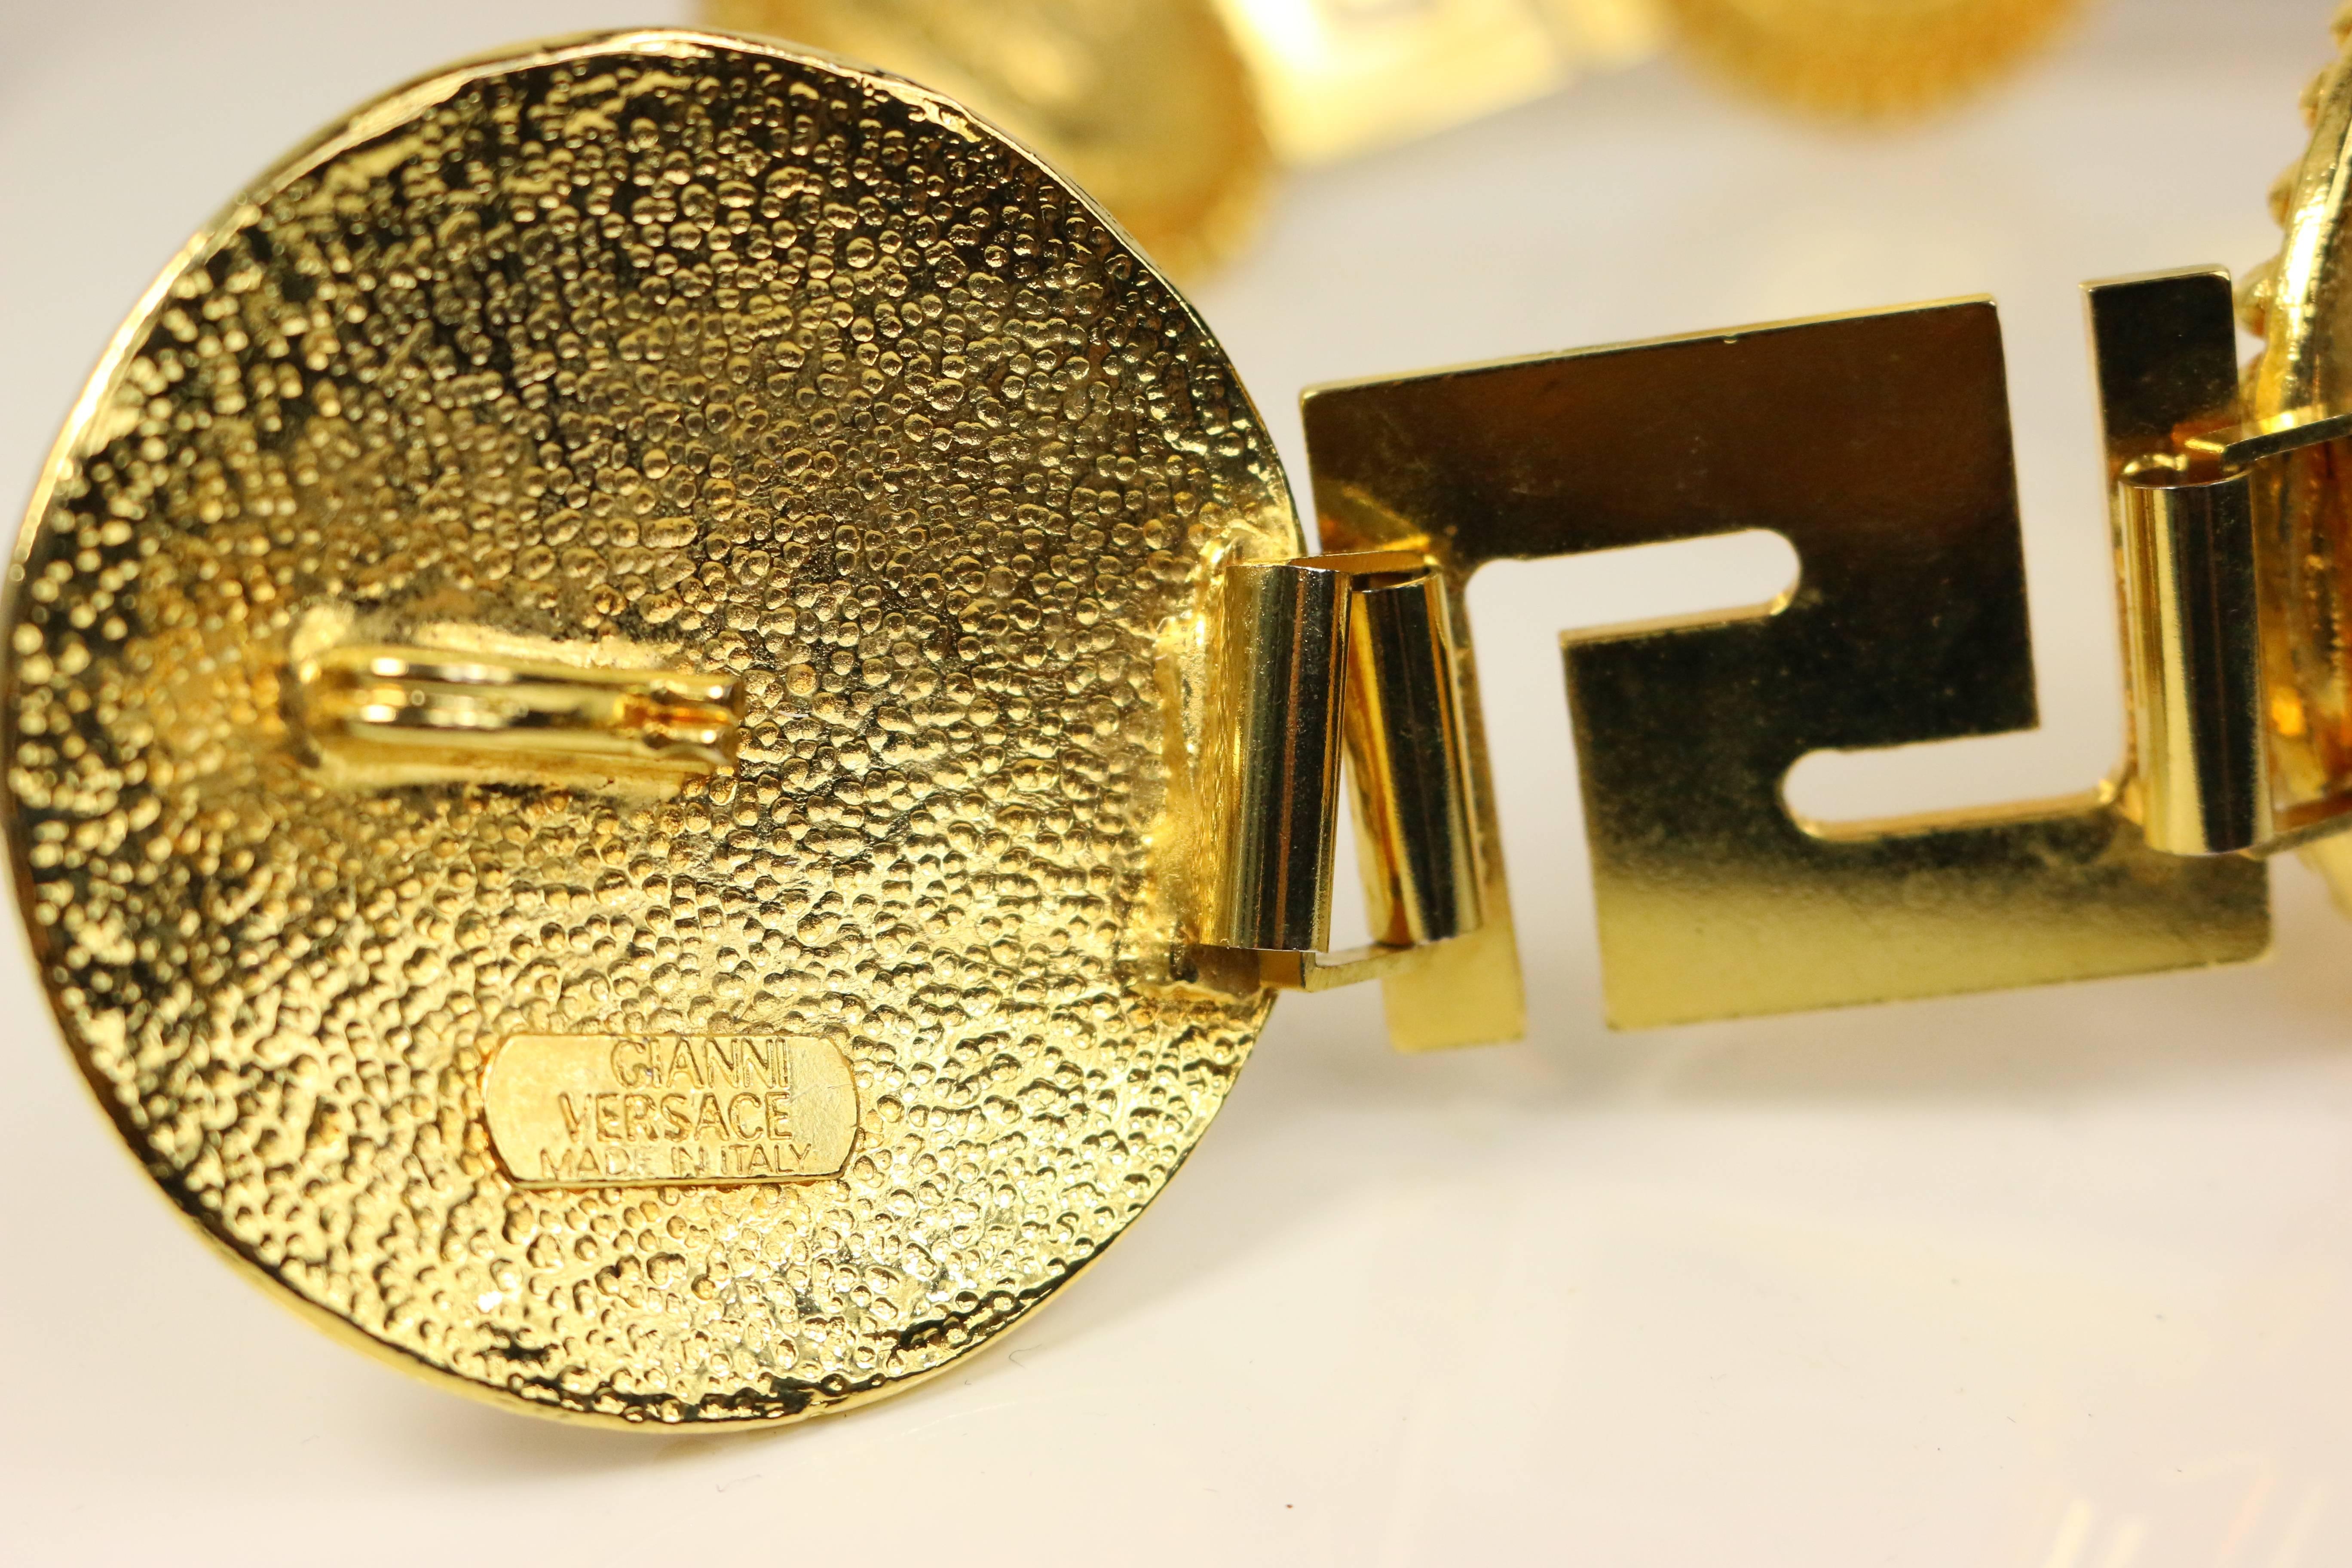 - Vintage 90s Gianni Versace iconique Medusa ceinture en chaîne d'or. Il s'agit sans aucun doute d'un objet de collection puisque tous les mannequins le portaient sur les podiums et dans les champagnes dans les années 90. 

- Fabriqué en Italie. 

-